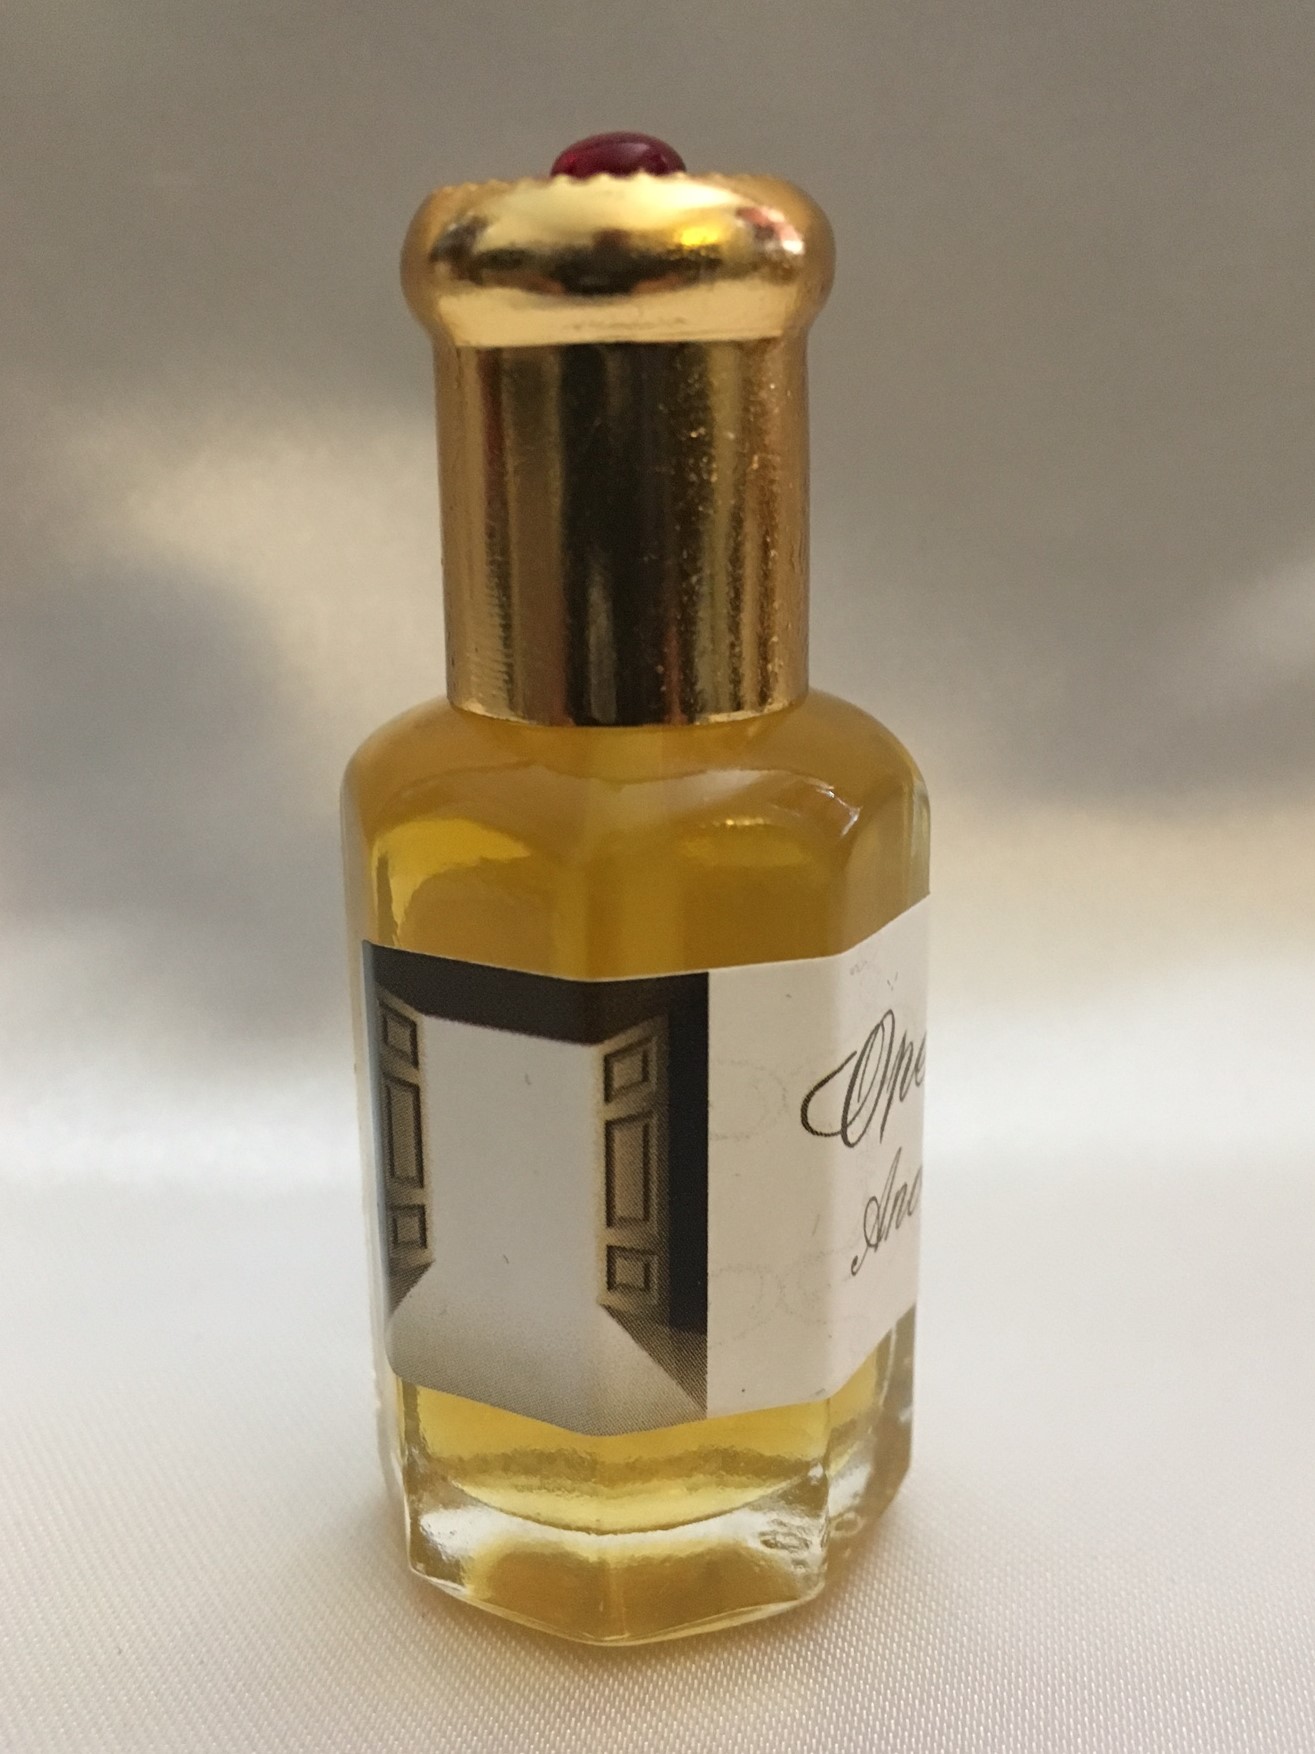 Healing Anointing Oil Ornate Gem Bottle 15 ml - Shofars From Afar